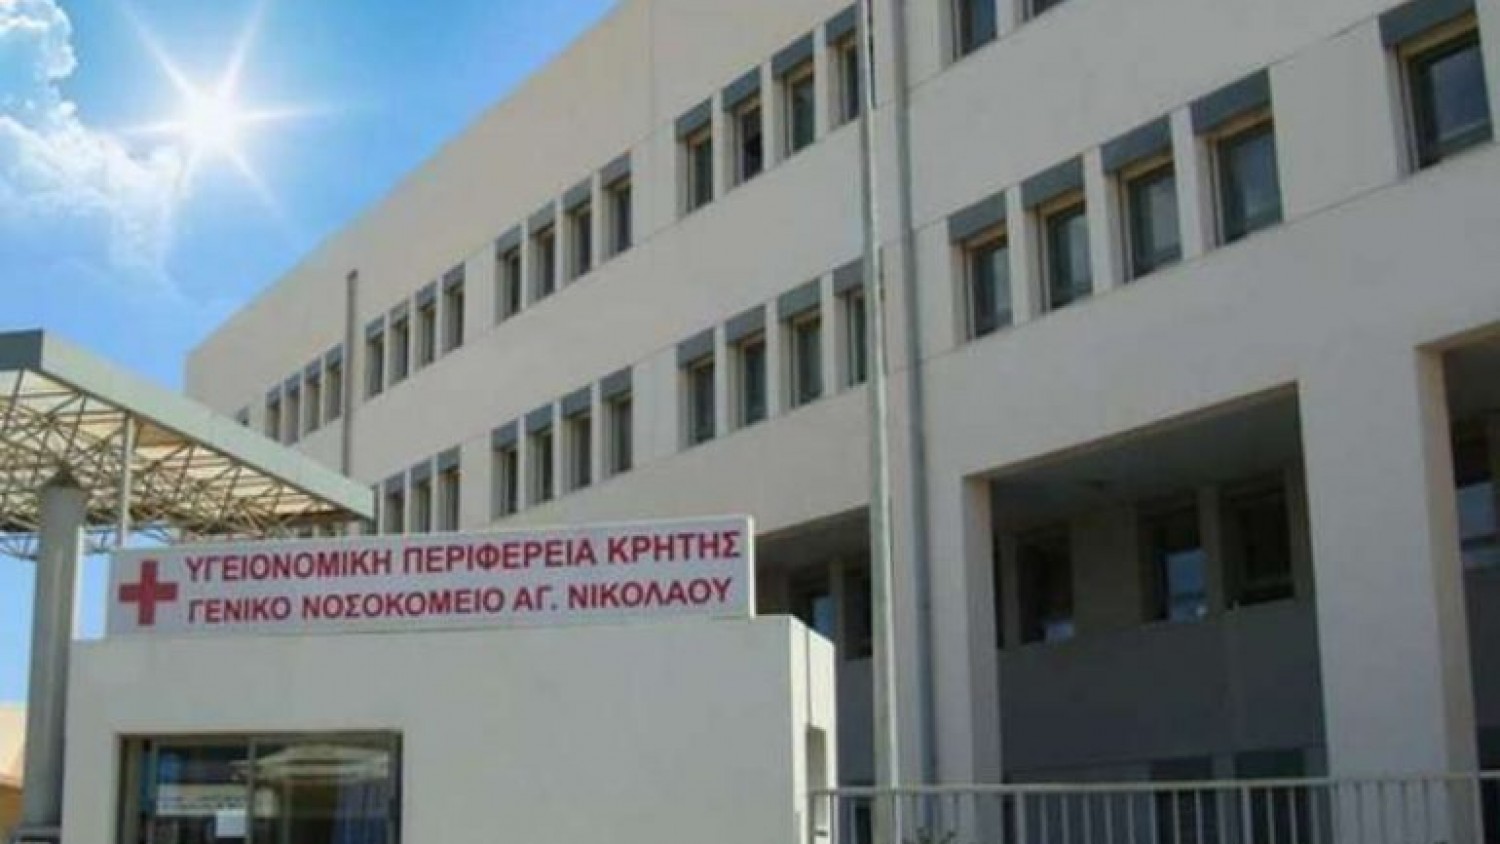 Σοβαρές αρρυθμίες στο νοσοκομείο Αγίου Νικολάου Κρήτης